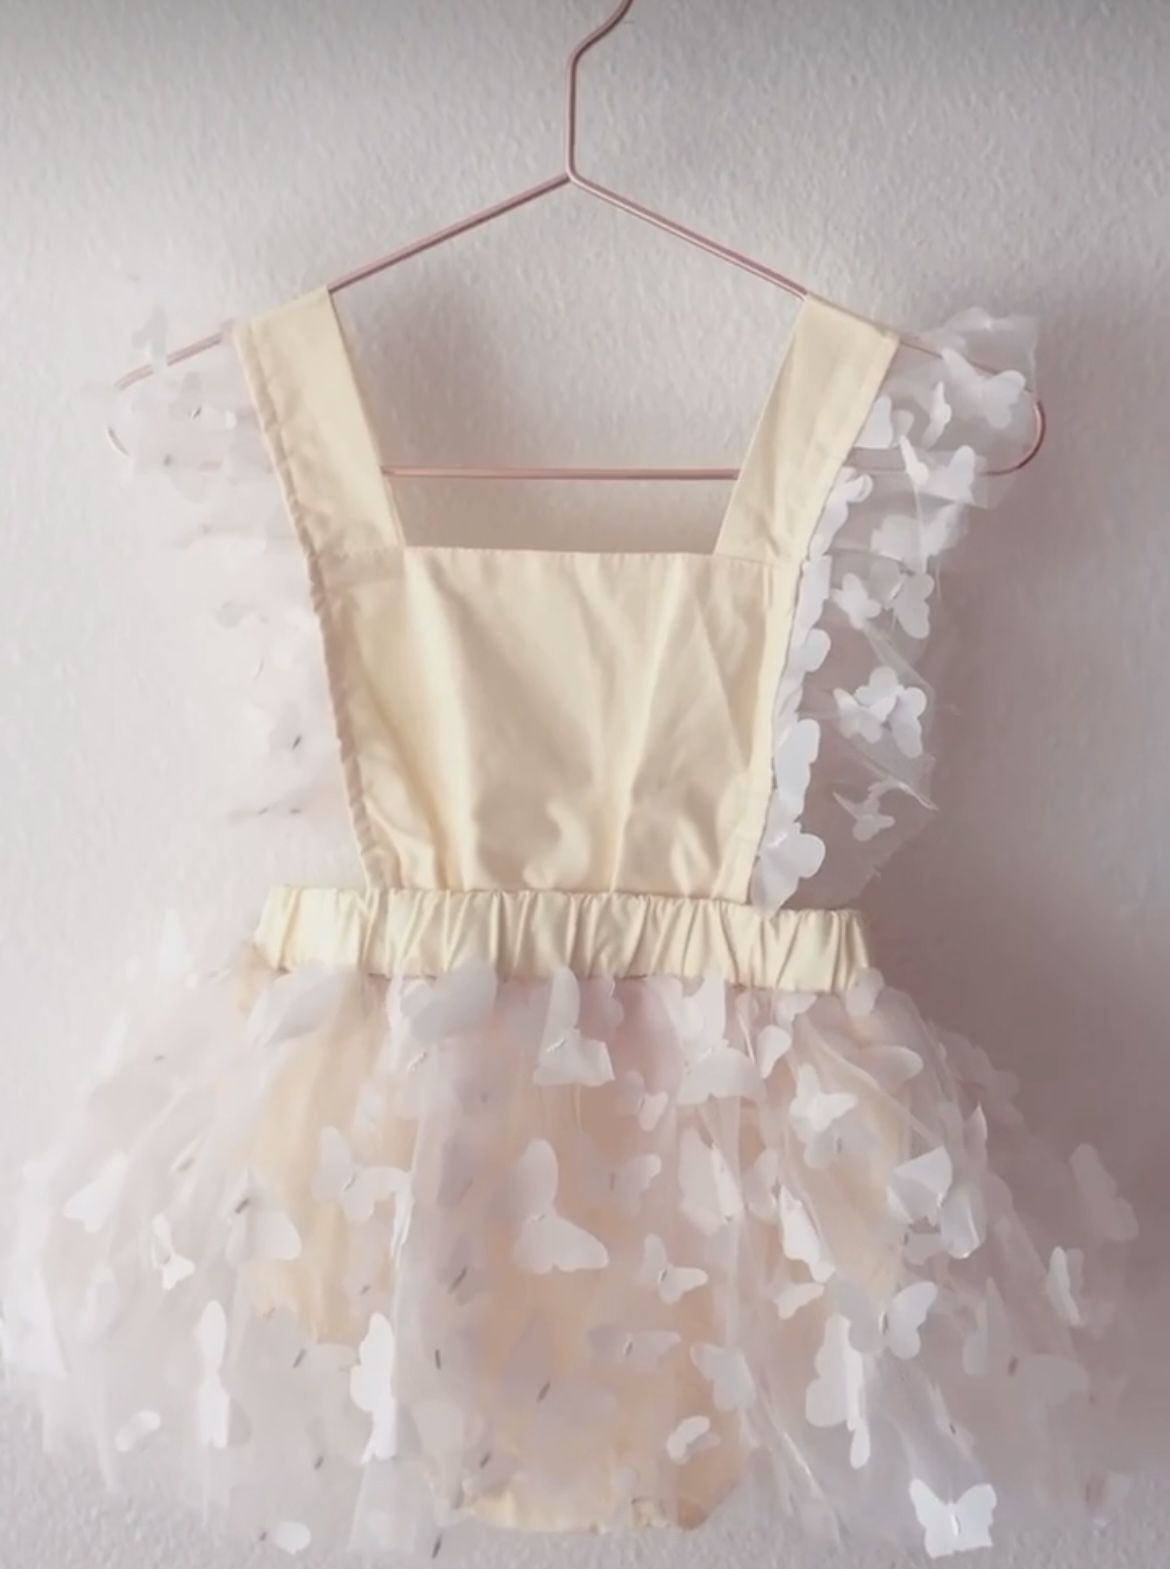 Baby Girl First Birthday Dress 